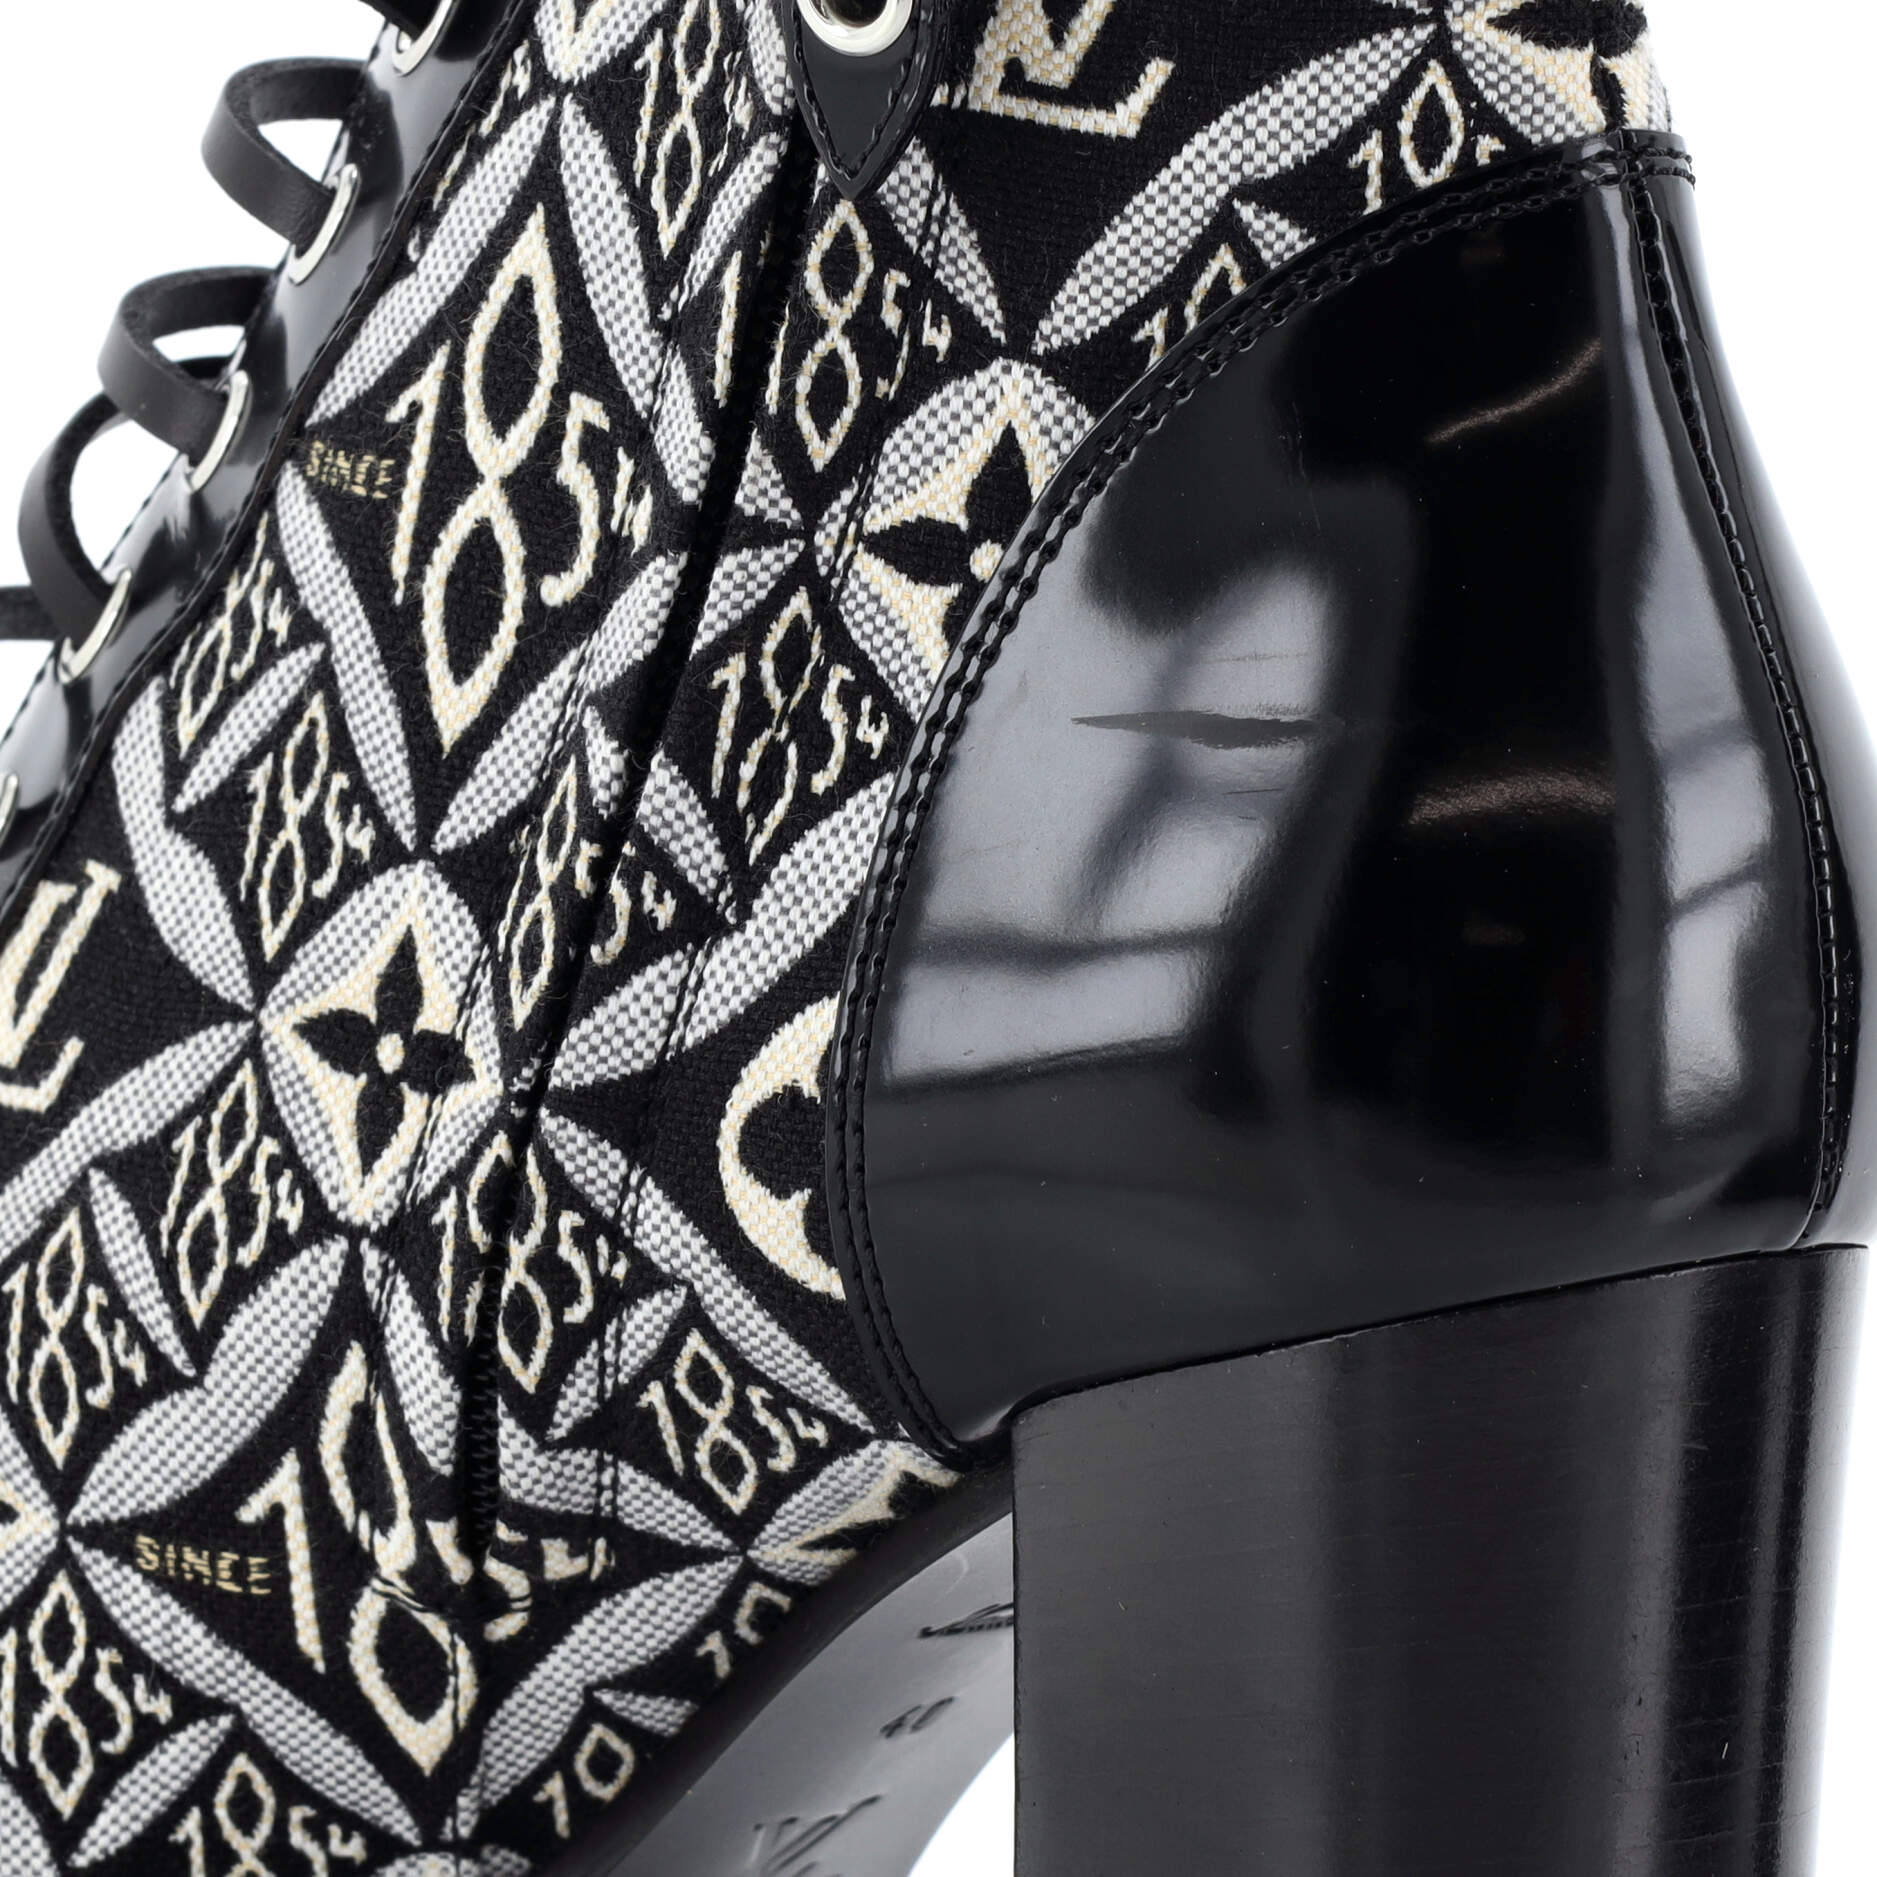 Louis Vuitton Star trail Patent leather Sandals 36.5 Black